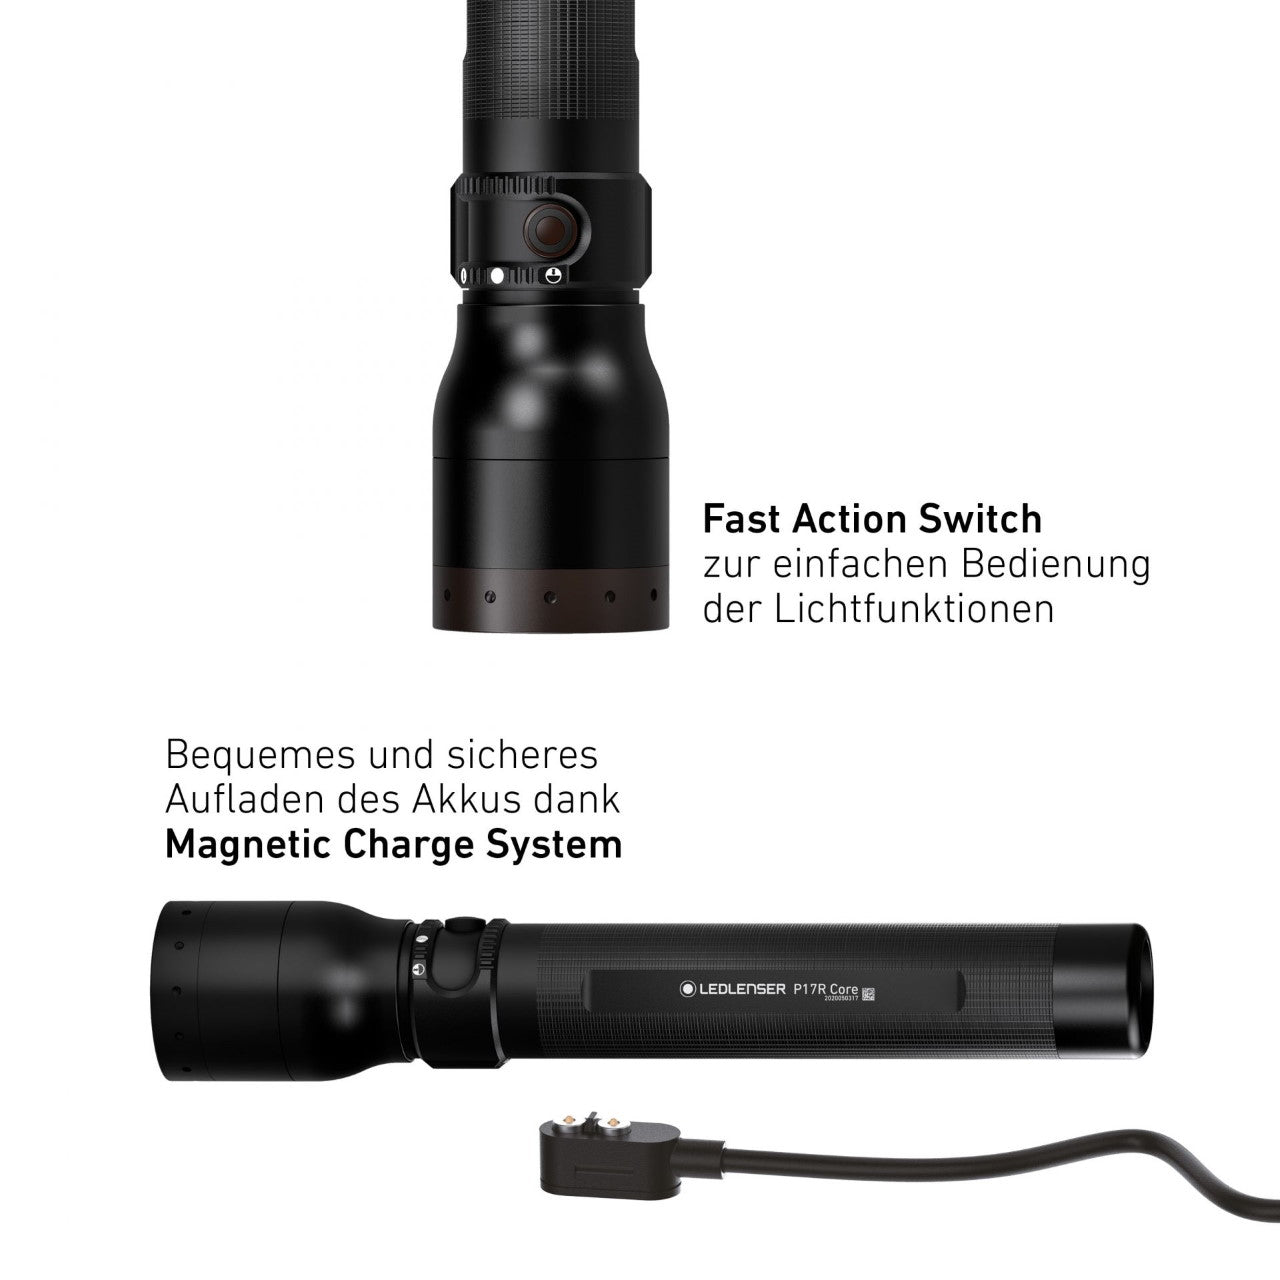 Ledlenser LED Flashlight Torch P17R CORE